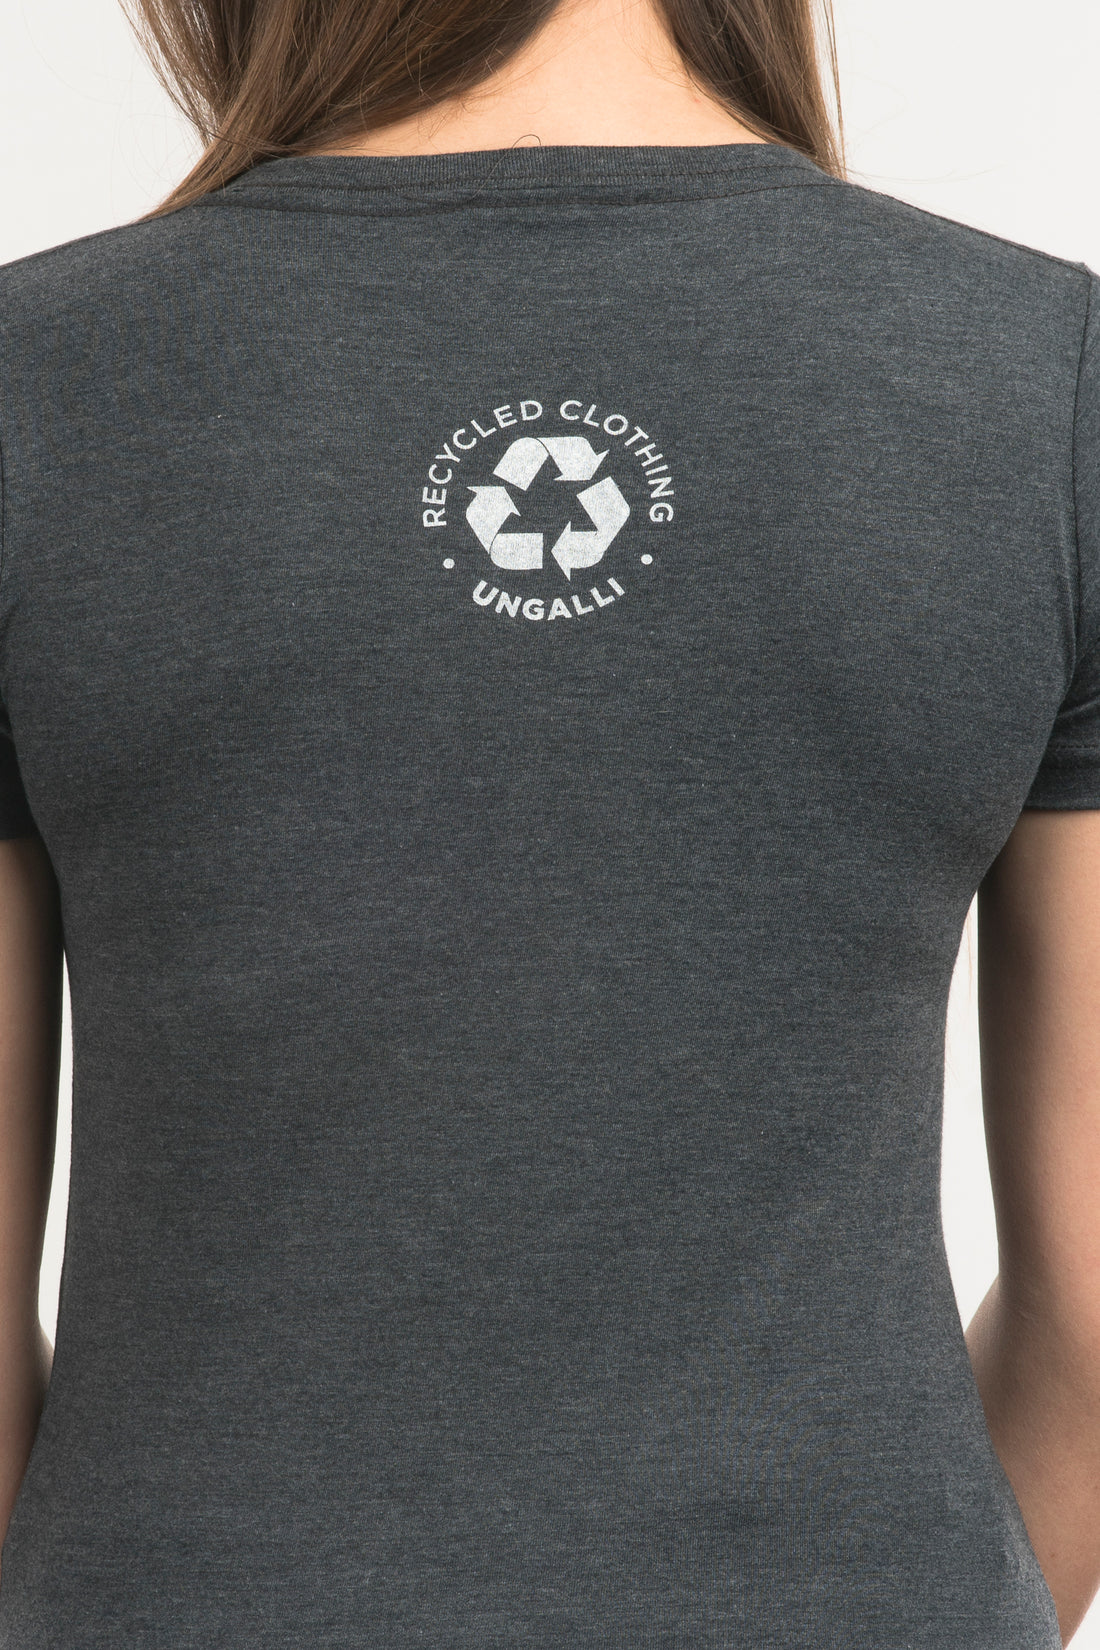 women's organic grey t-shirt